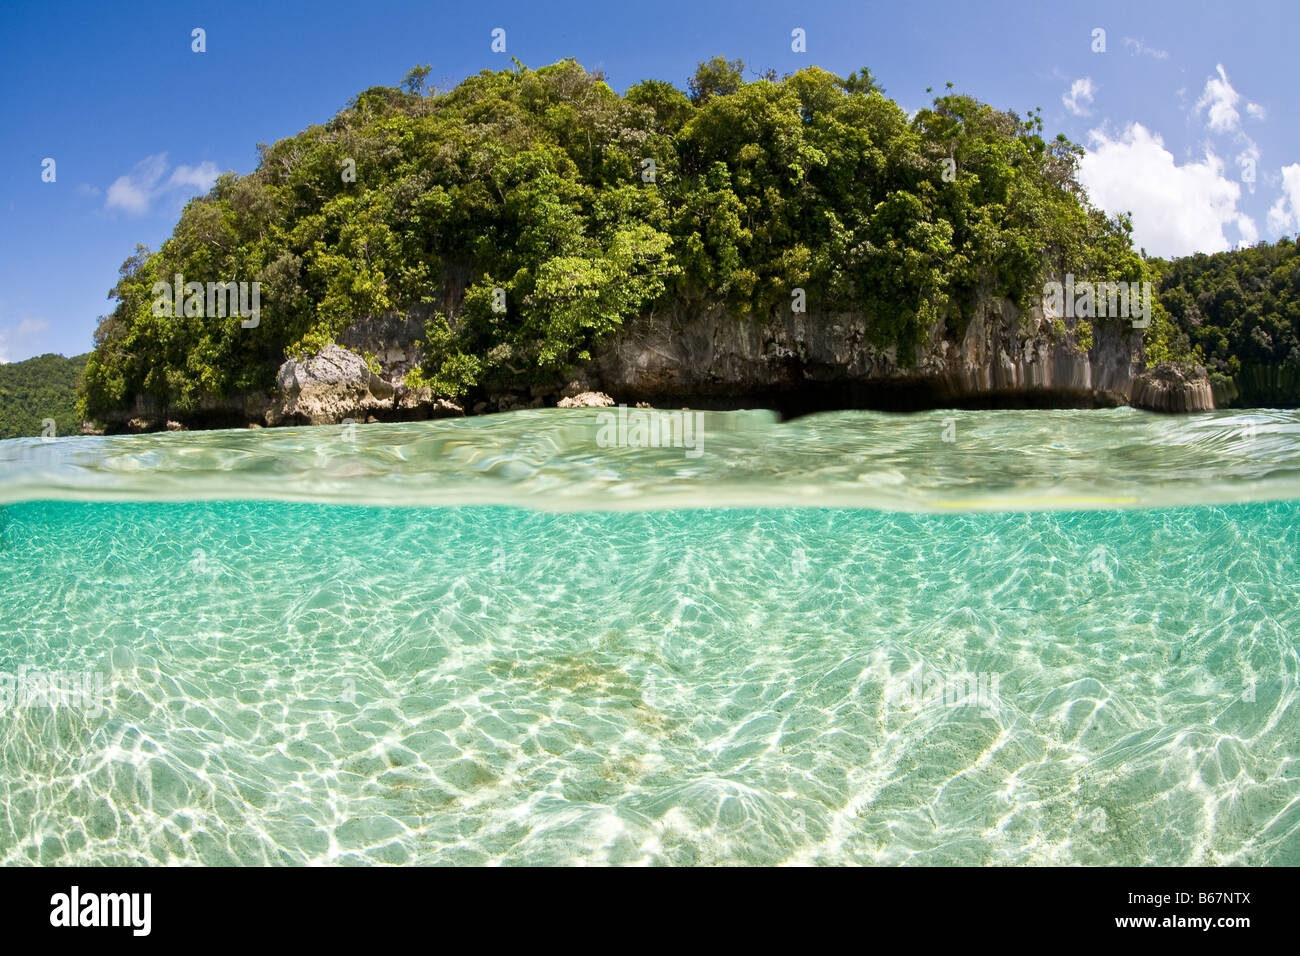 Les réflexions dans l'océan Pacifique Palau Micronésie Lagoon Banque D'Images